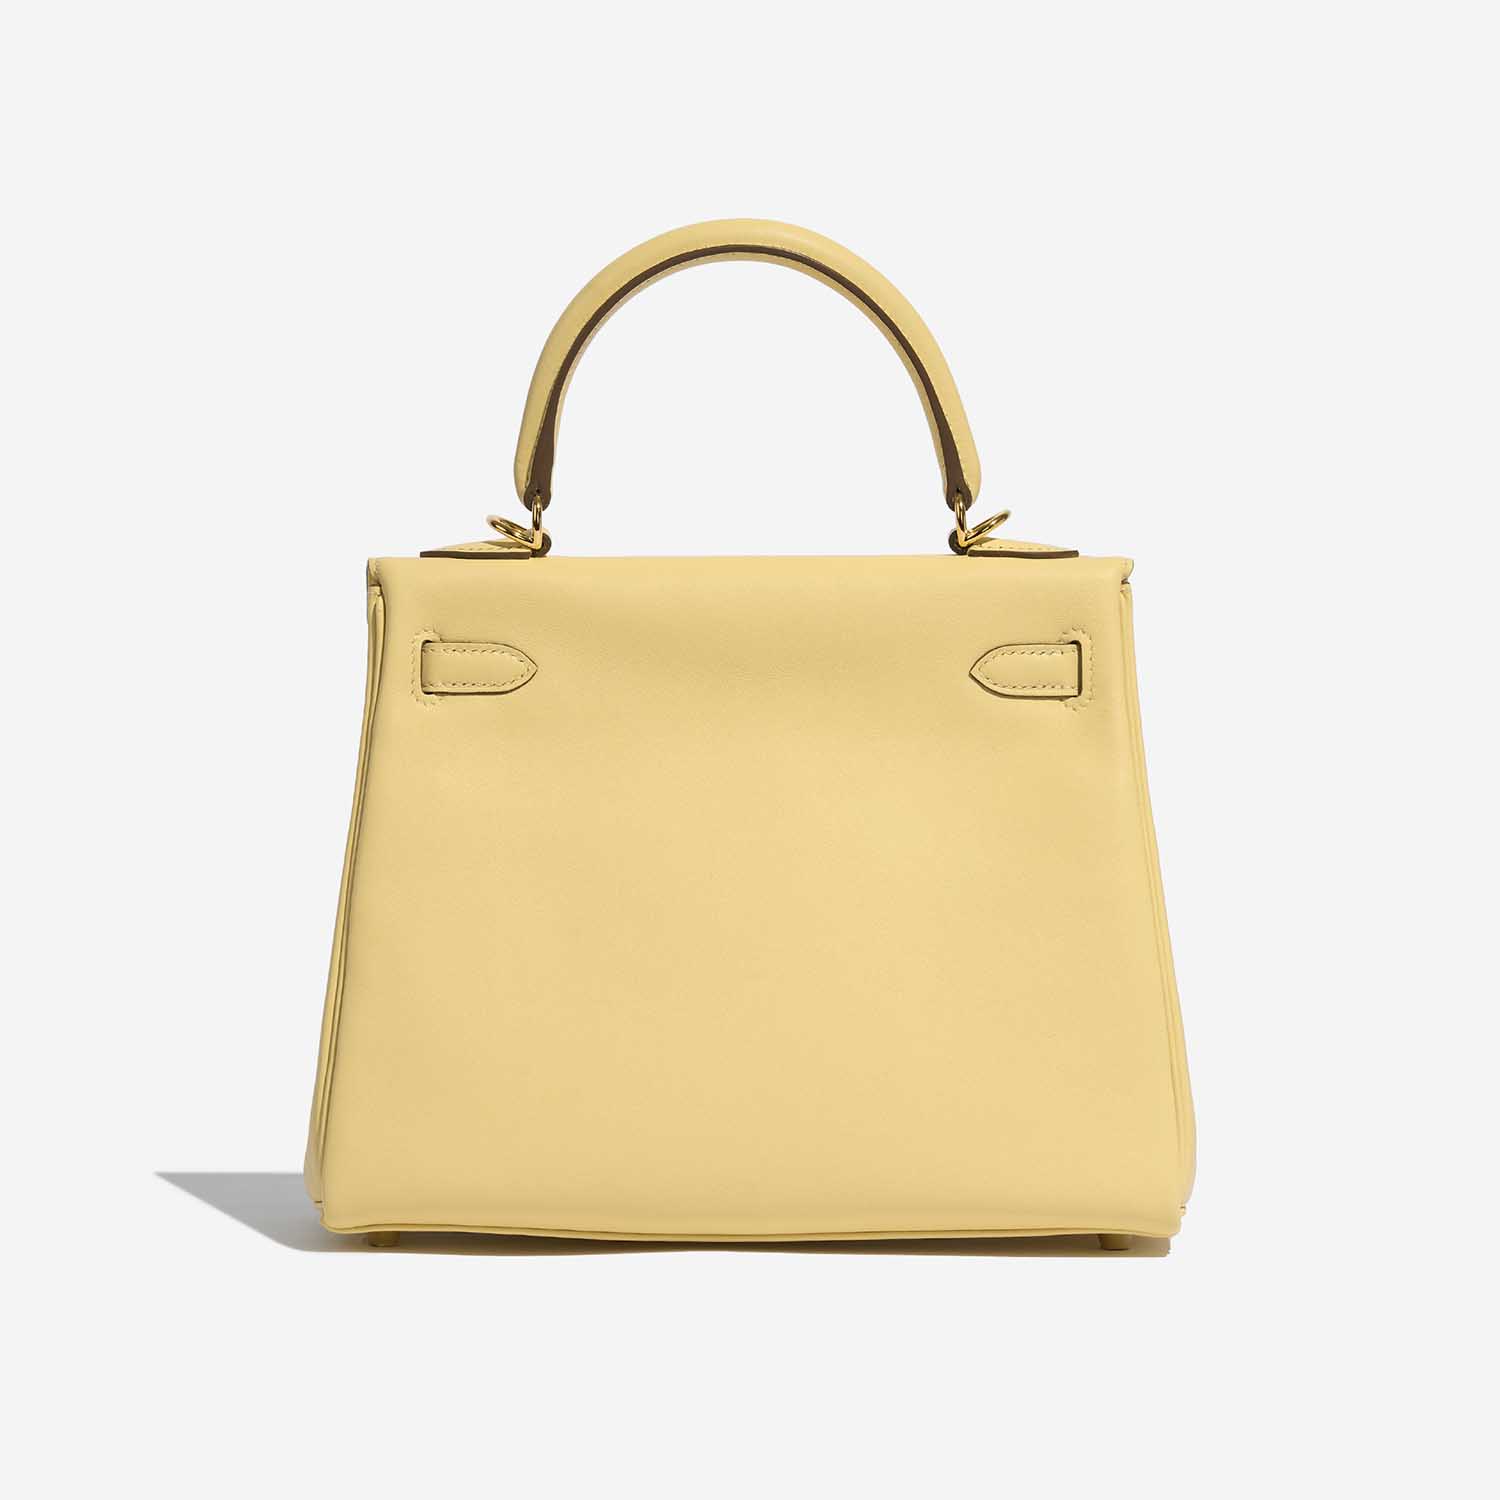 Pre-owned Hermès Tasche Kelly 25 Swift Jaune Poussin Yellow Back | Verkaufen Sie Ihre Designer-Tasche auf Saclab.com